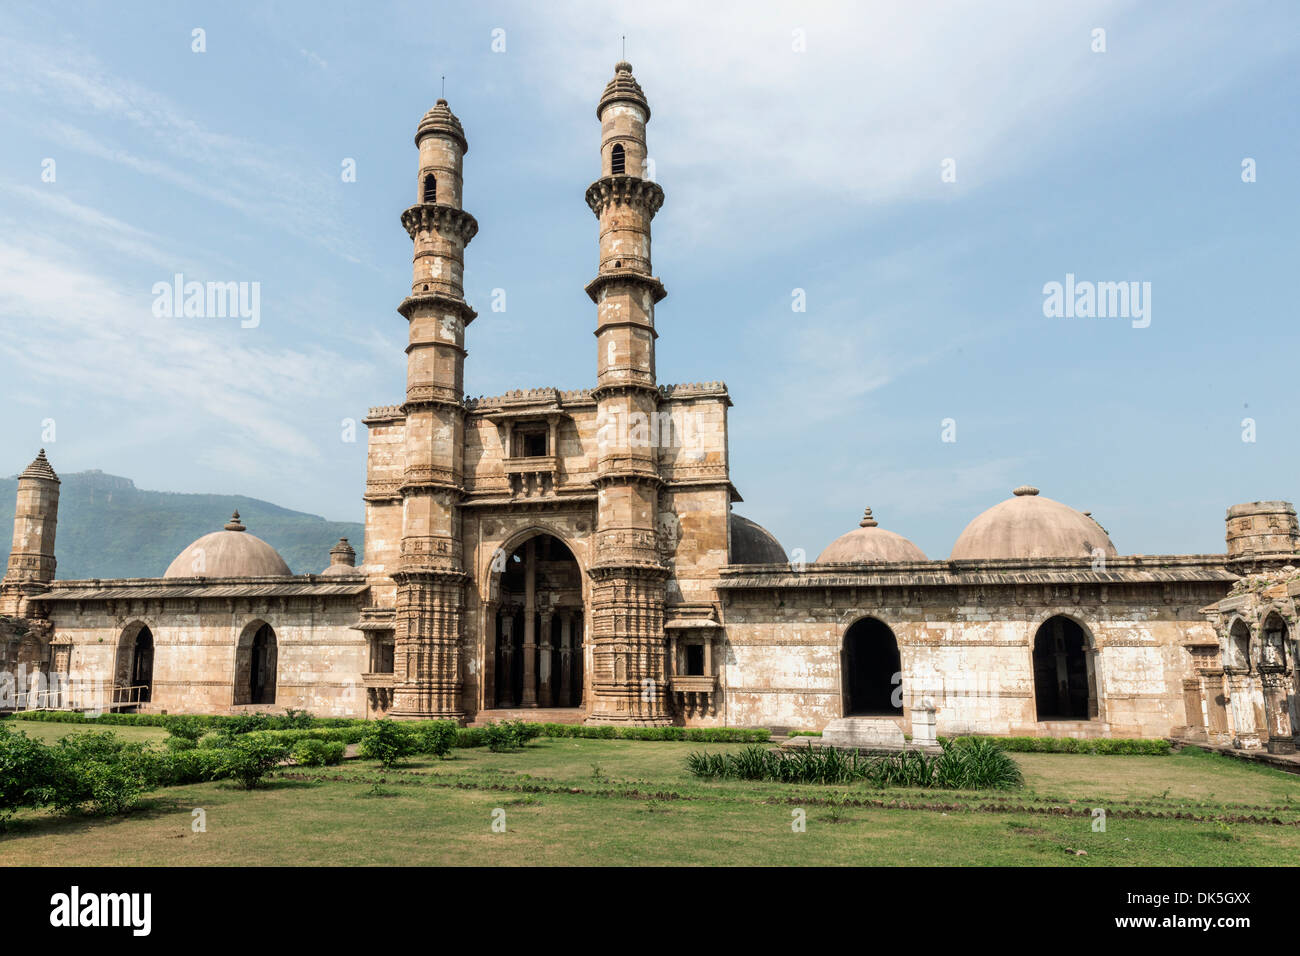 Jami Masjid, Moschee, Champaner-Pavagadh archäologischer Park, Bundesstaat Gujarat, Indien Stockfoto